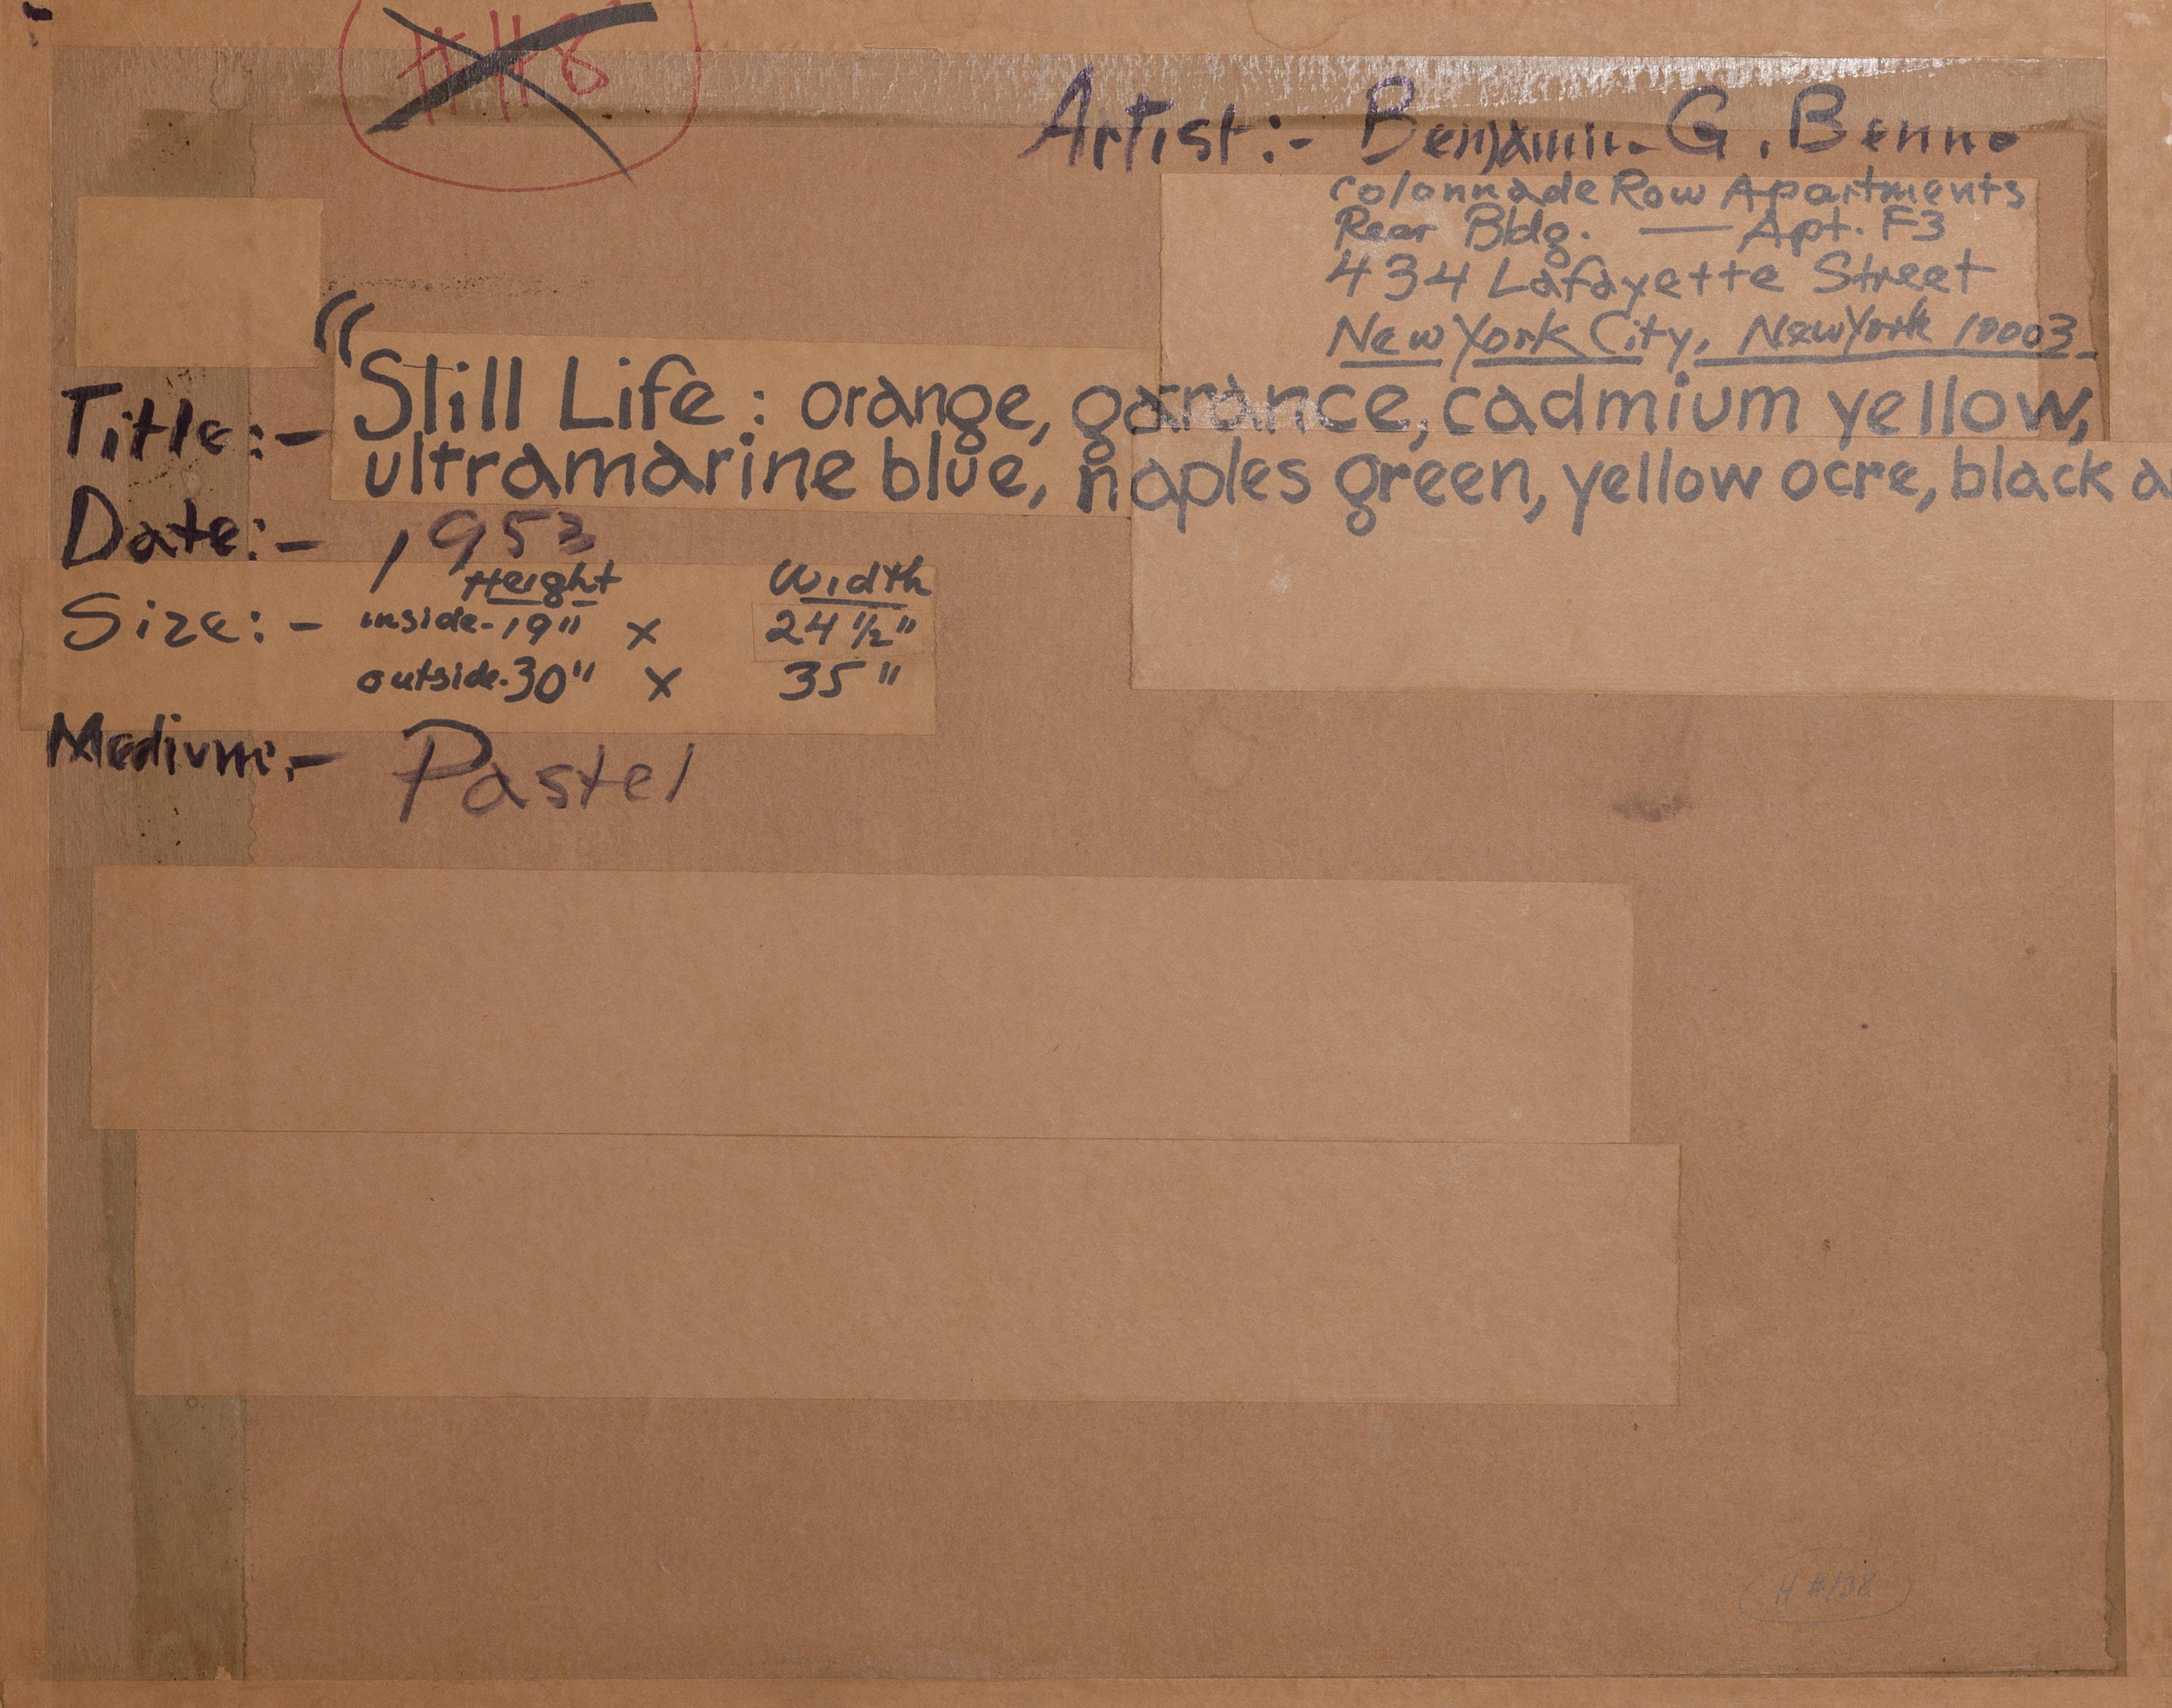 Ein originales Ölpastell auf Papier von Benjamin Benno, Amerikaner (1901 - 1980) mit den Maßen 19 x 25 Zoll. In den frühen 1930er Jahren hatte er sich einen Ruf als Mitglied der internationalen Avantgarde erworben und stellte mit den bedeutendsten